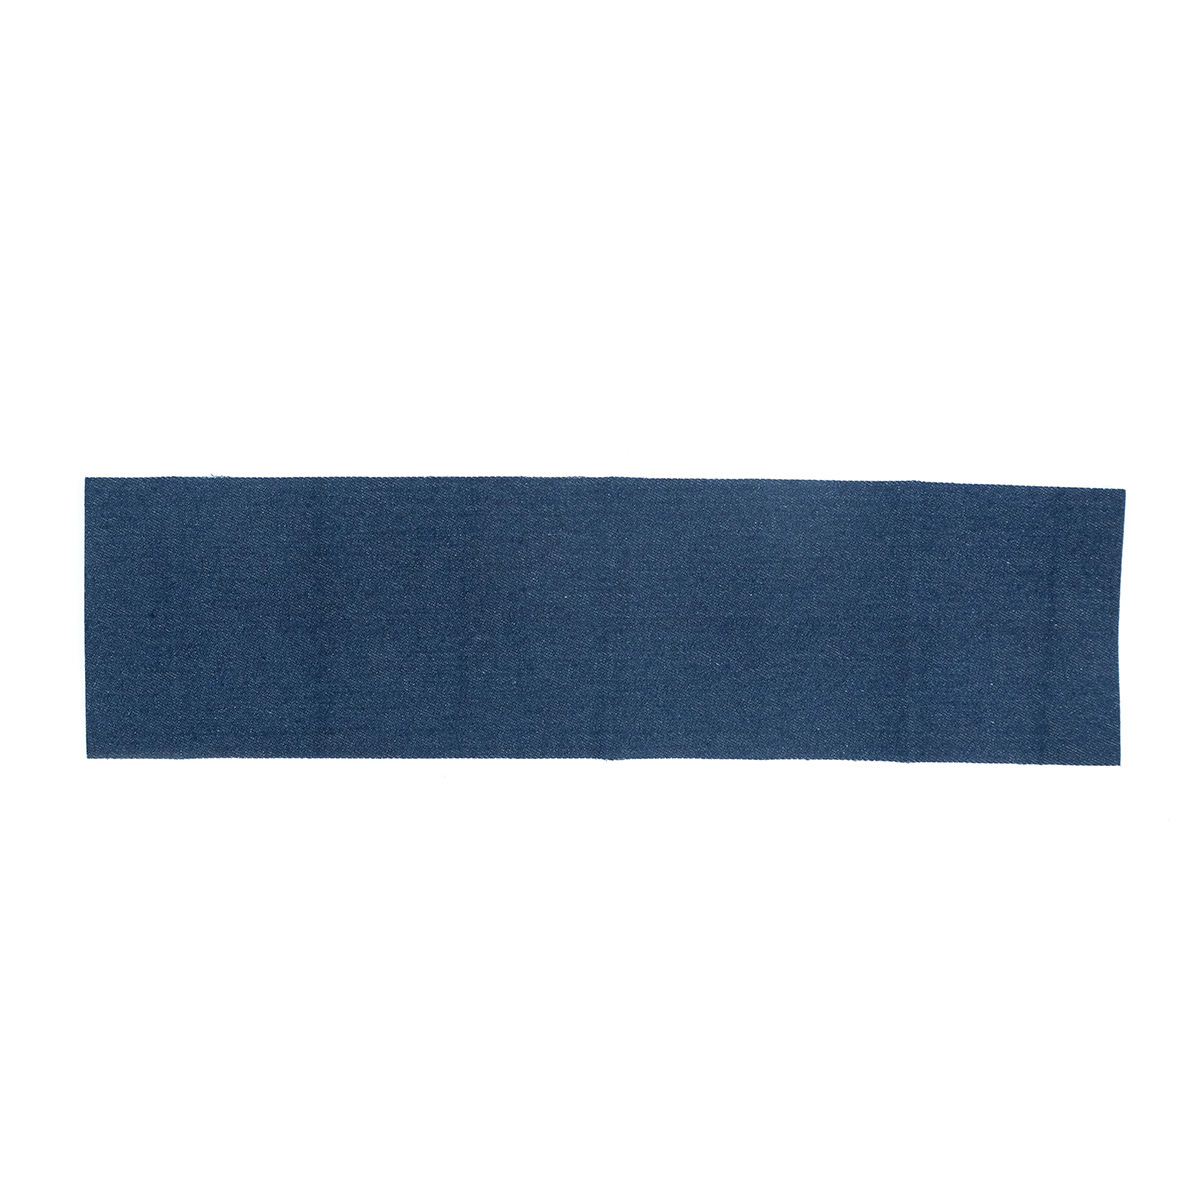 Ткань для заплаток термоклеевая Prym 929550, 12*45см, джинс 100% хлопок, темно-синий